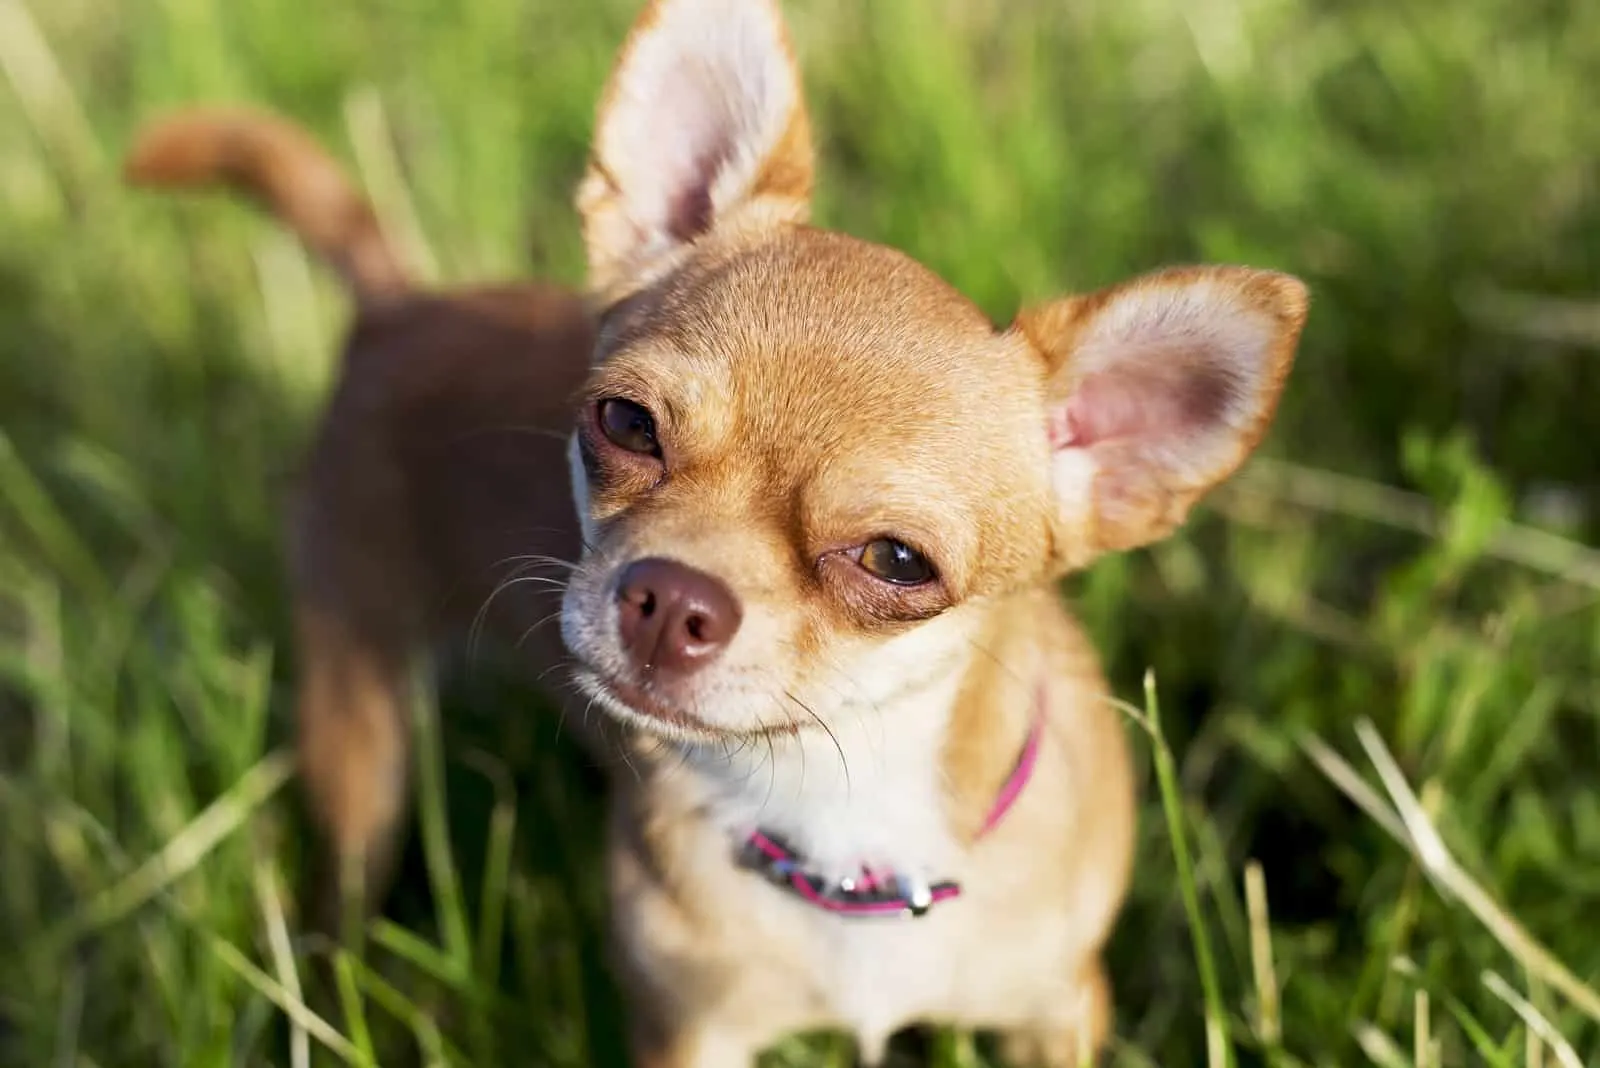 Chihuahua looking up at camera